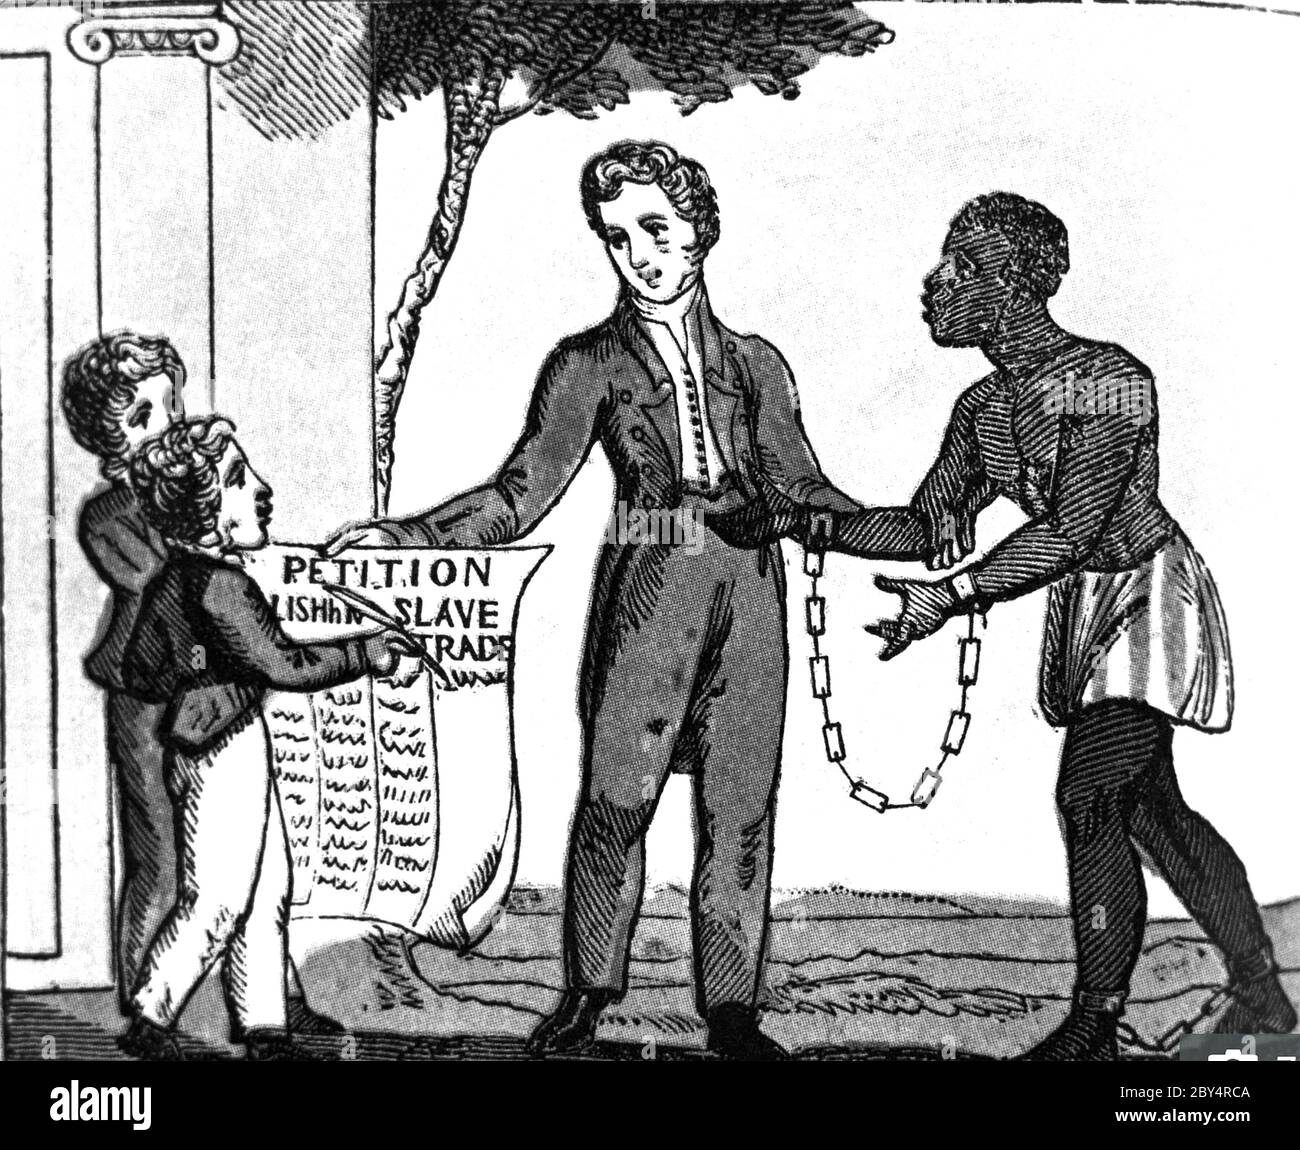 SKLAVEREI ABSCHAFFUNG ACT 1833 eine Illustration aus dem Buch "The Black man's Lament, or, how to make Sugar" von Amelia Opie aus dem Jahr 1826. Ihre war die erste von 187,000 Namen auf einer Petition von Frauen, die dem britischen Parlament vorgelegt wurde, um die Sklaverei zu beenden. Die Klage war in der Form eines Gedichts. Stockfoto